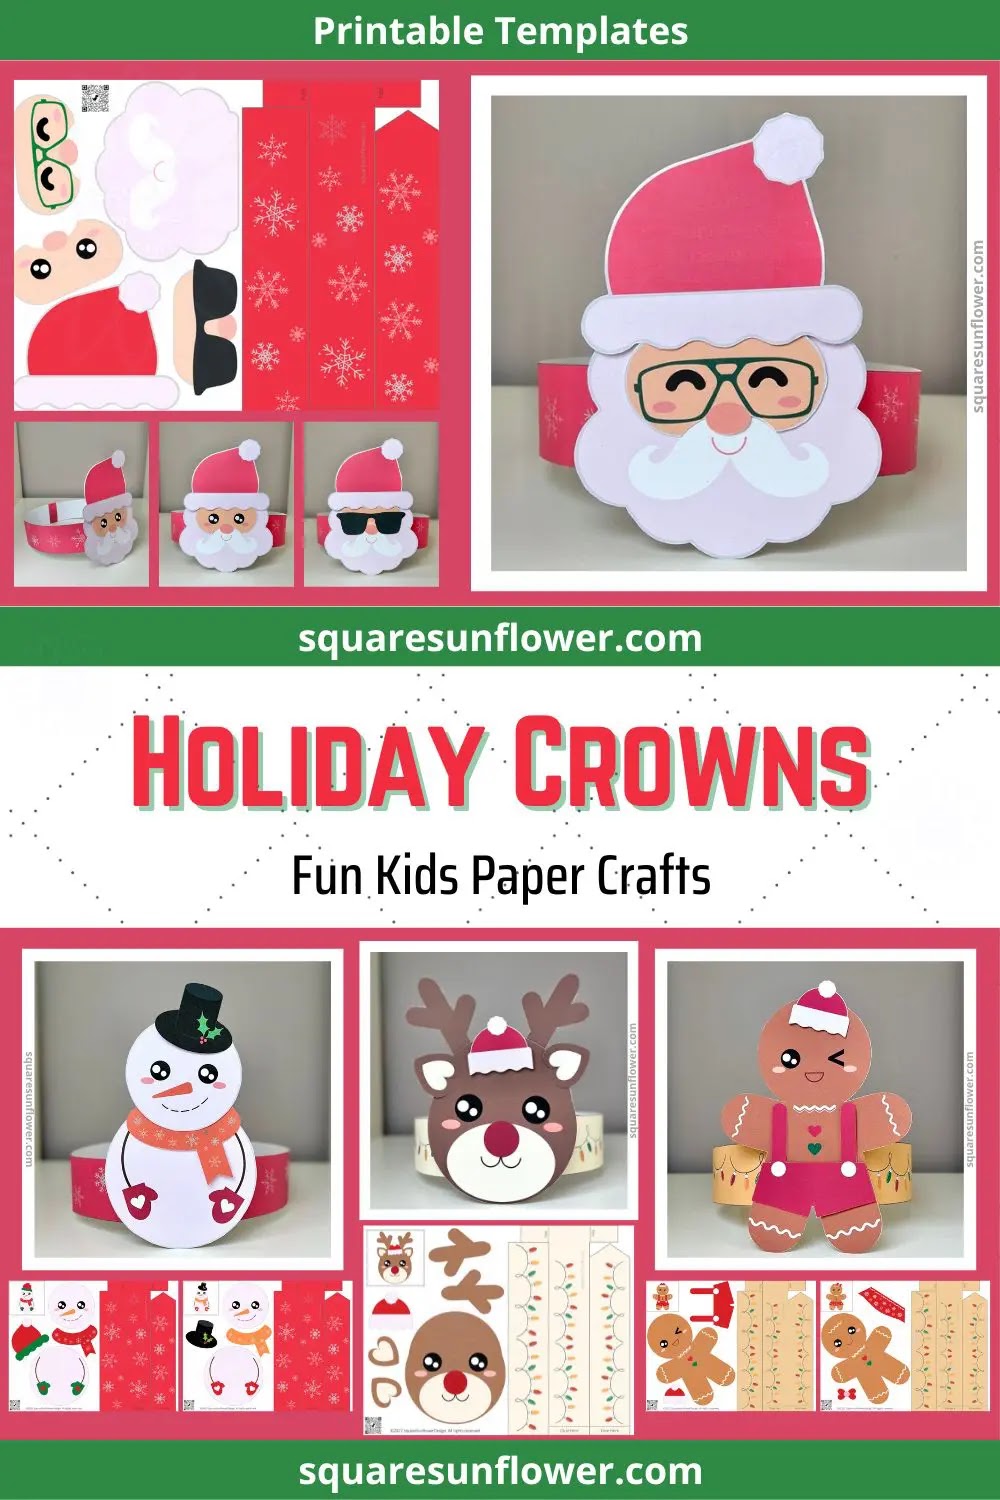 Printable Holiday Crown Templates